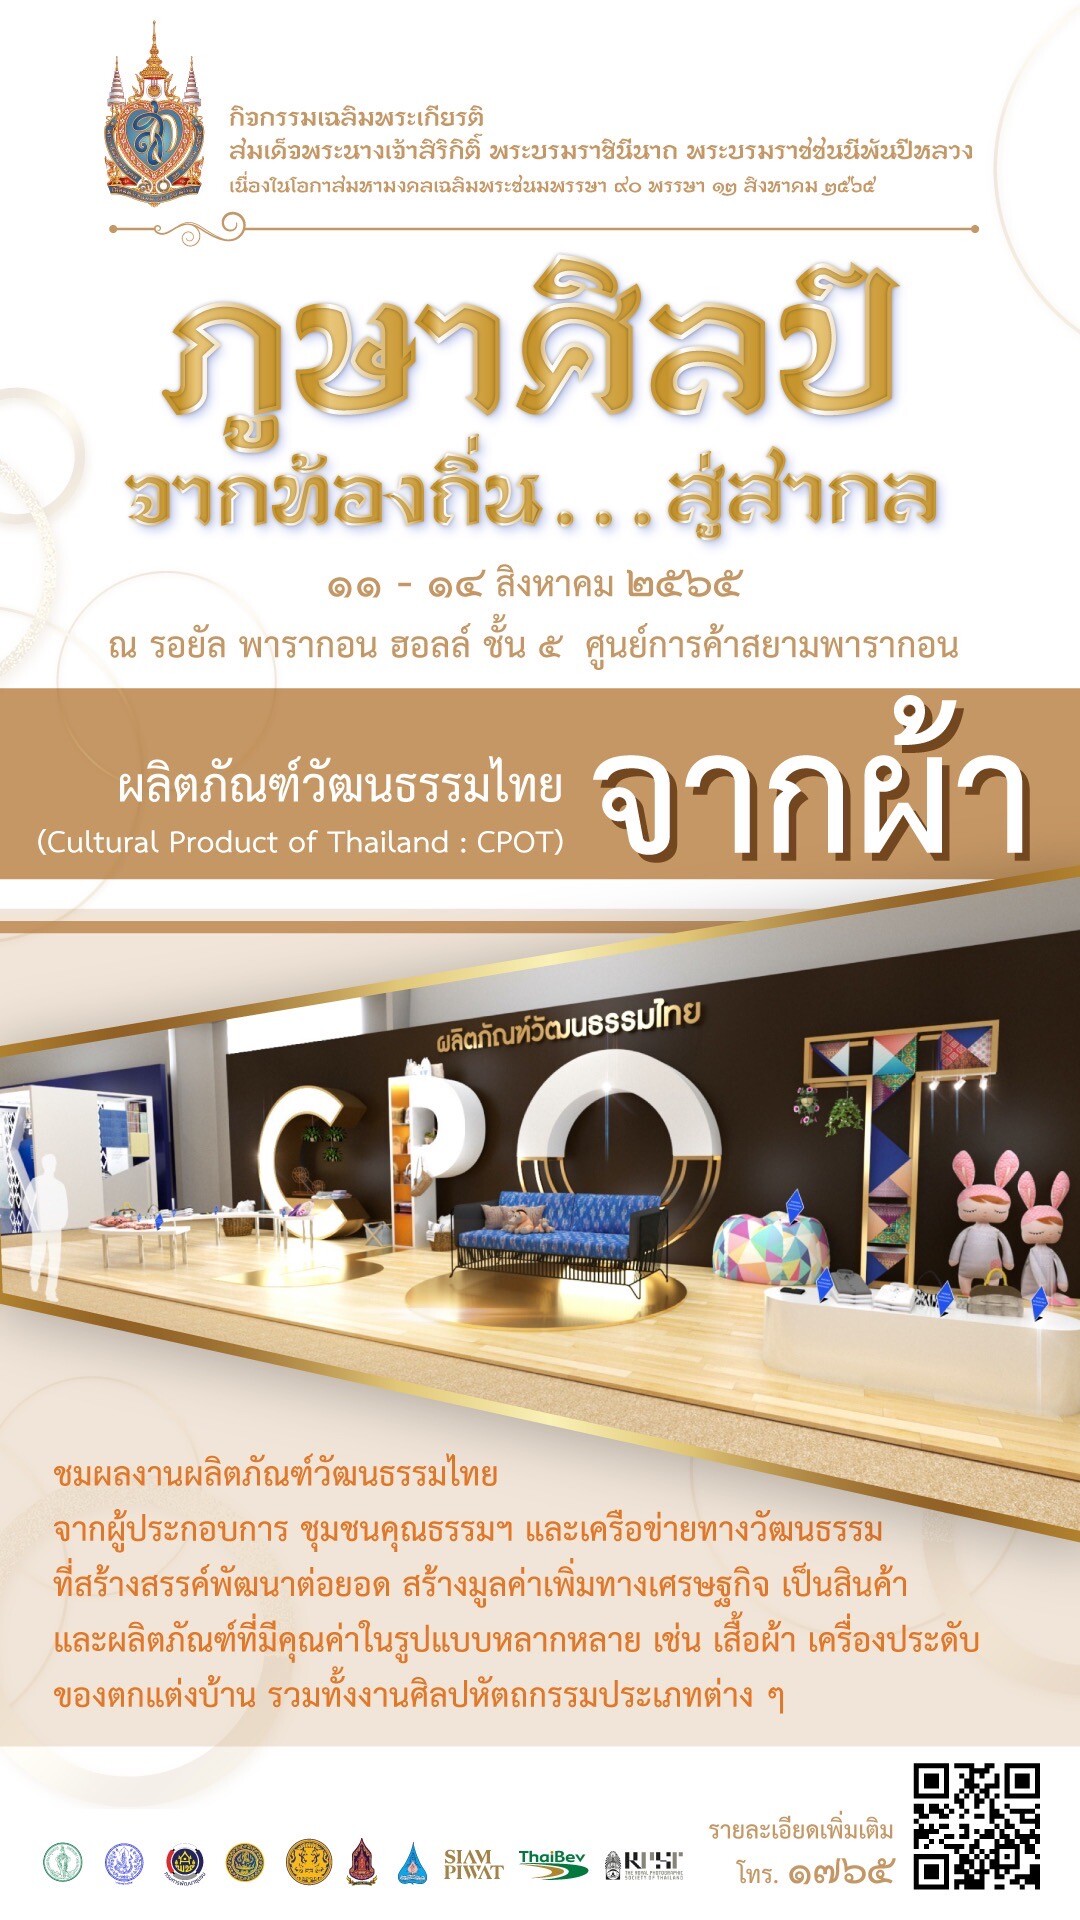 76 จังหวัดร่วมโชว์ภูมิปัญญา-ผลิตภัณฑ์วัฒนธรรมไทย CPOT -หน่วยงานภาครัฐ เอกชน ร่วมออกบูทงานผ้าและผลิตภัณฑ์จากผ้าไทย ในงาน "ภูษาศิลป์ จากท้องถิ่นสู่สากล" 11-14 สิงหาคม 2565